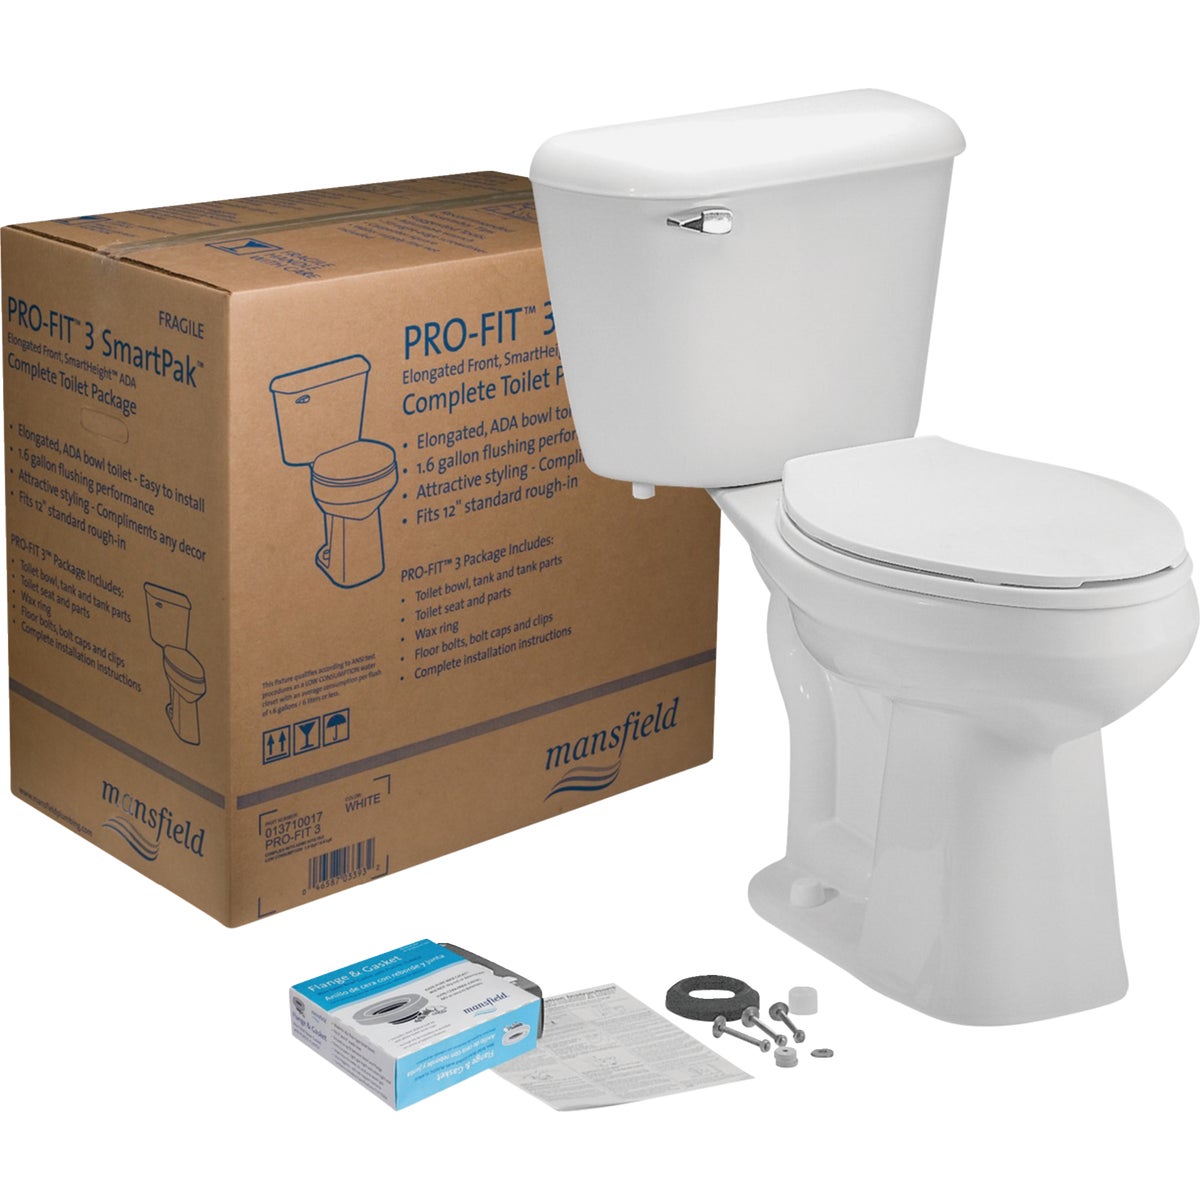 Item 454145, Pro-Fit 3. Complete toilet kit. 1.6 GPF (gallons per flush)/6.